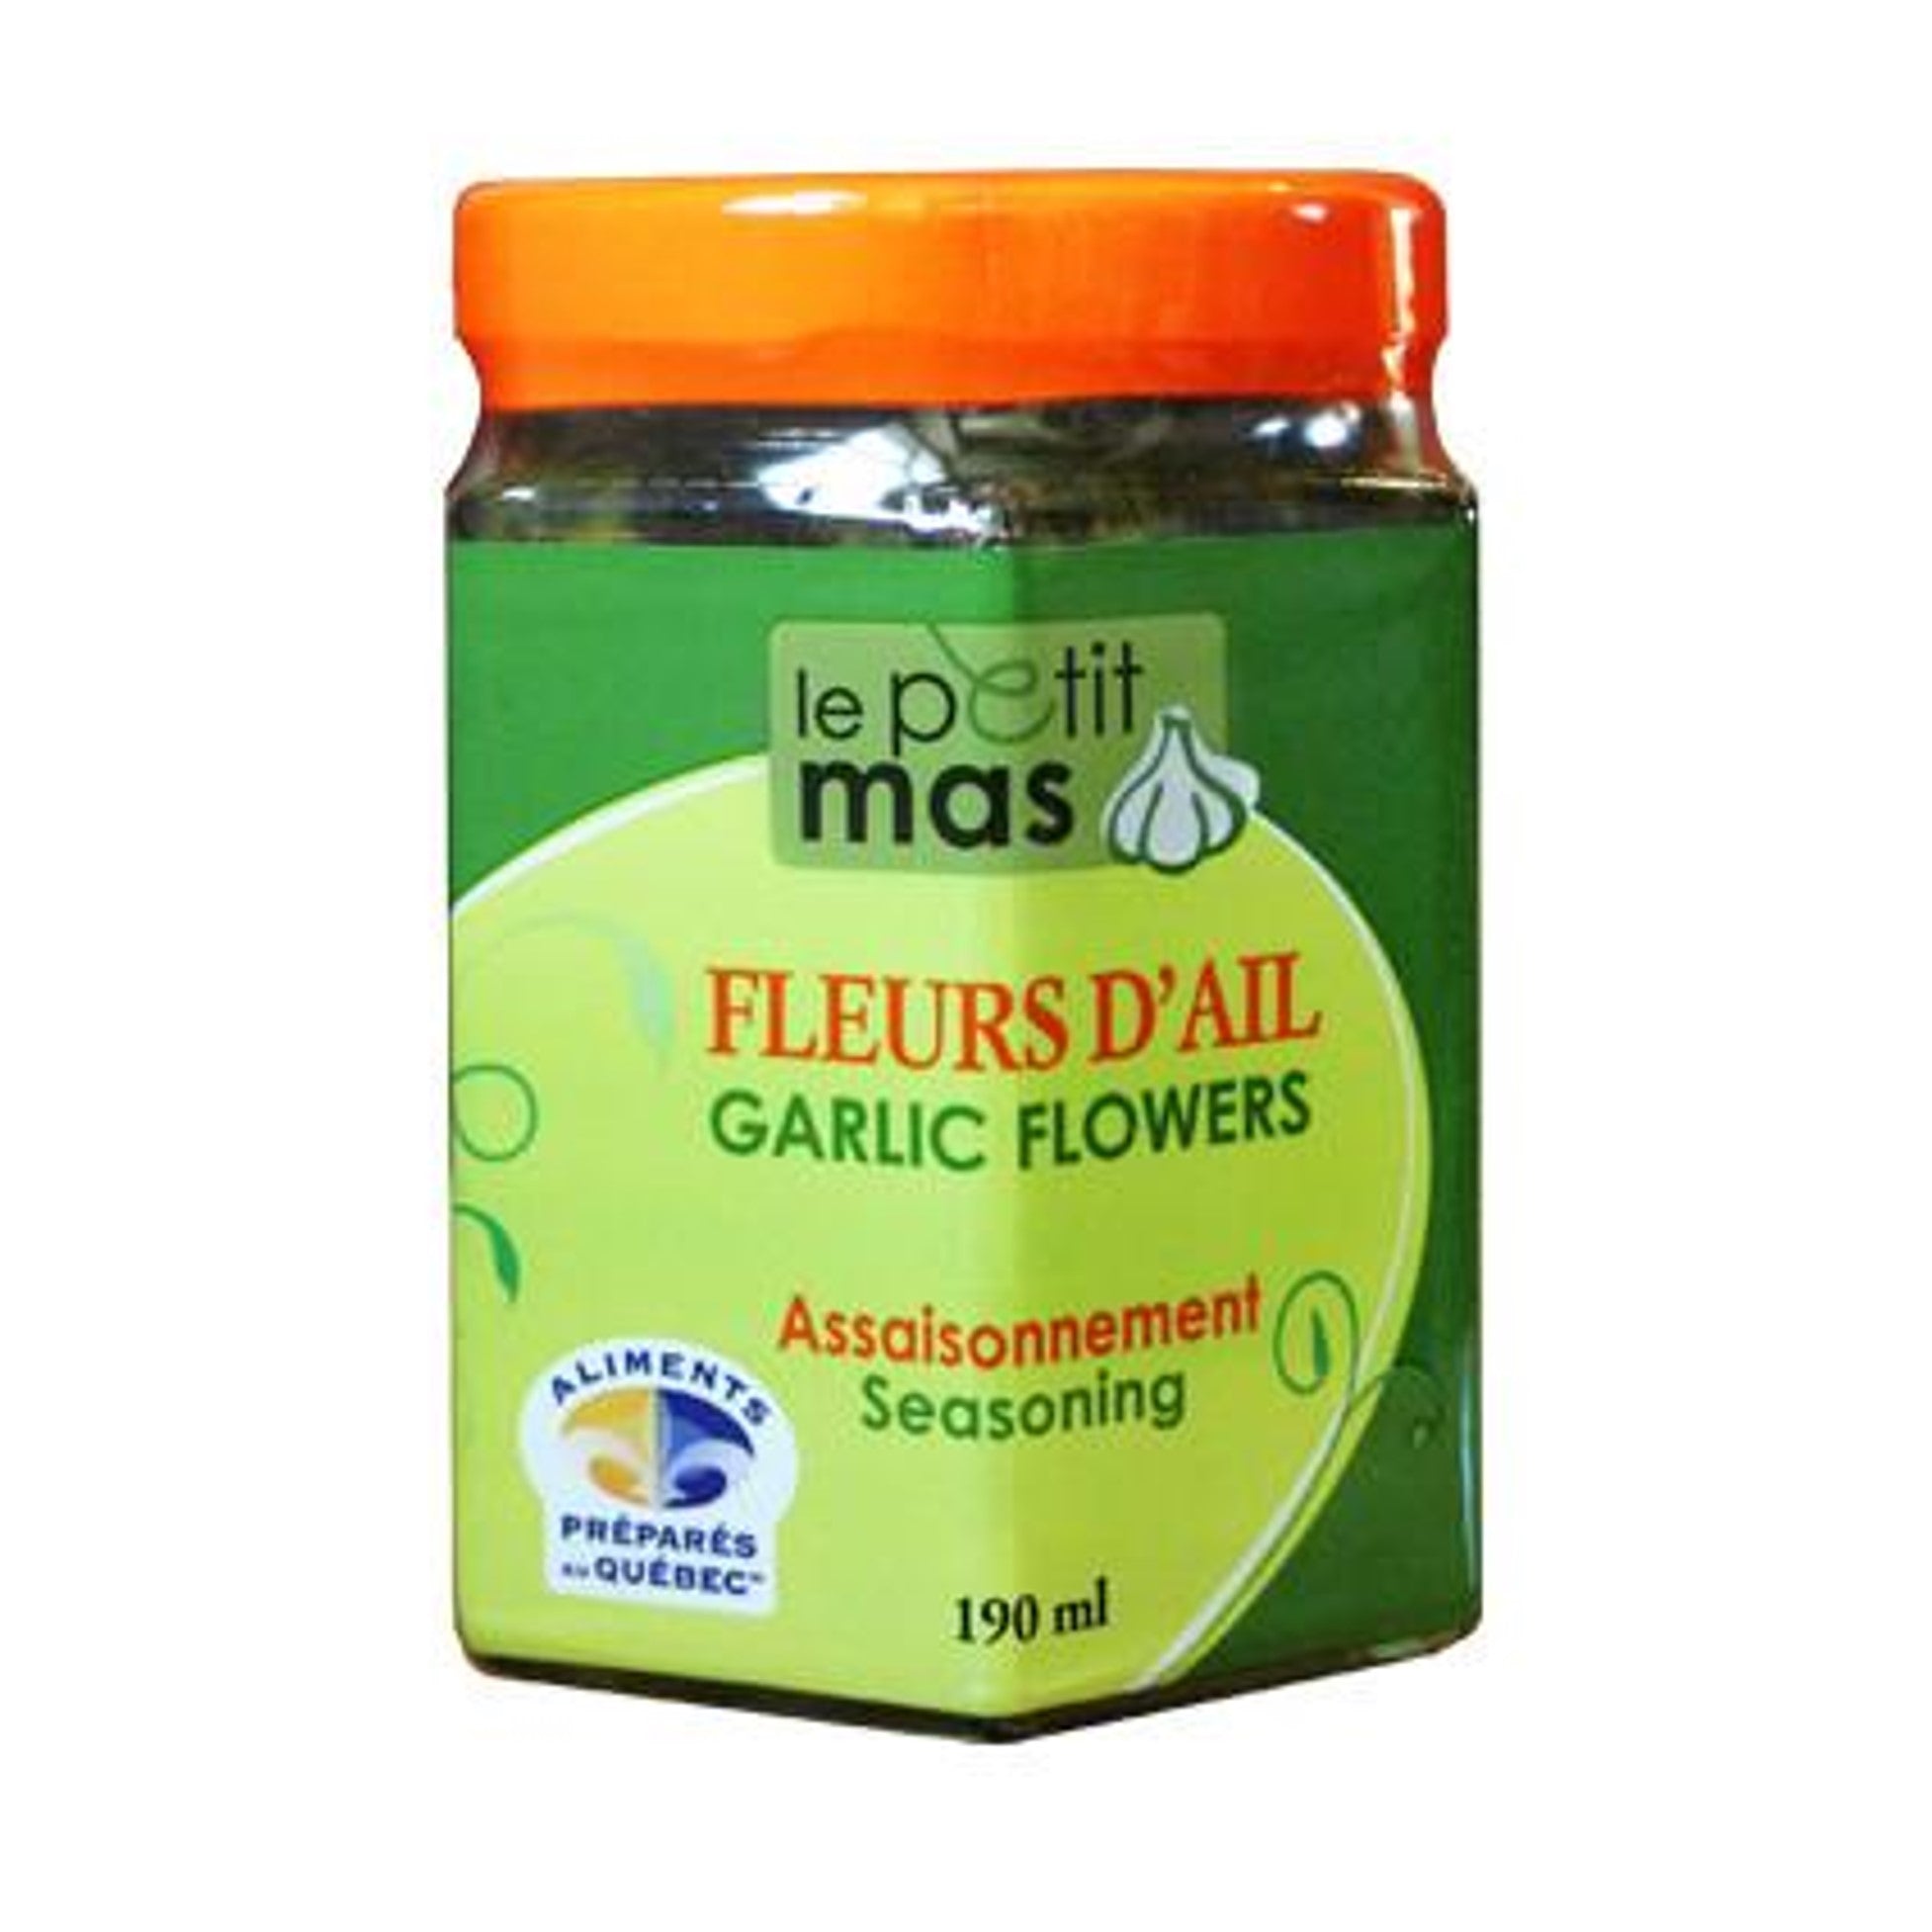 Le Petit Mas Garlic Flowers 190ml